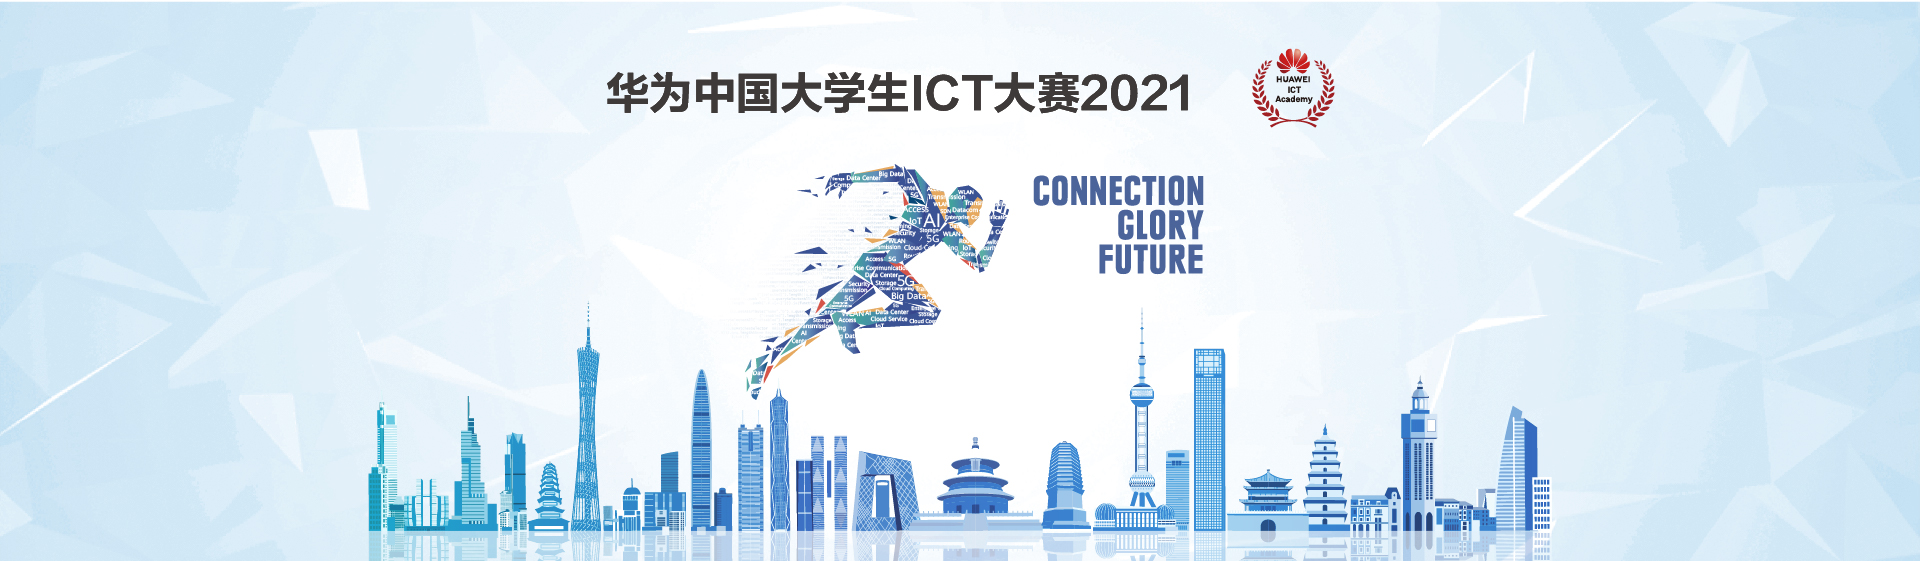 2021华为ICT大赛.jpg